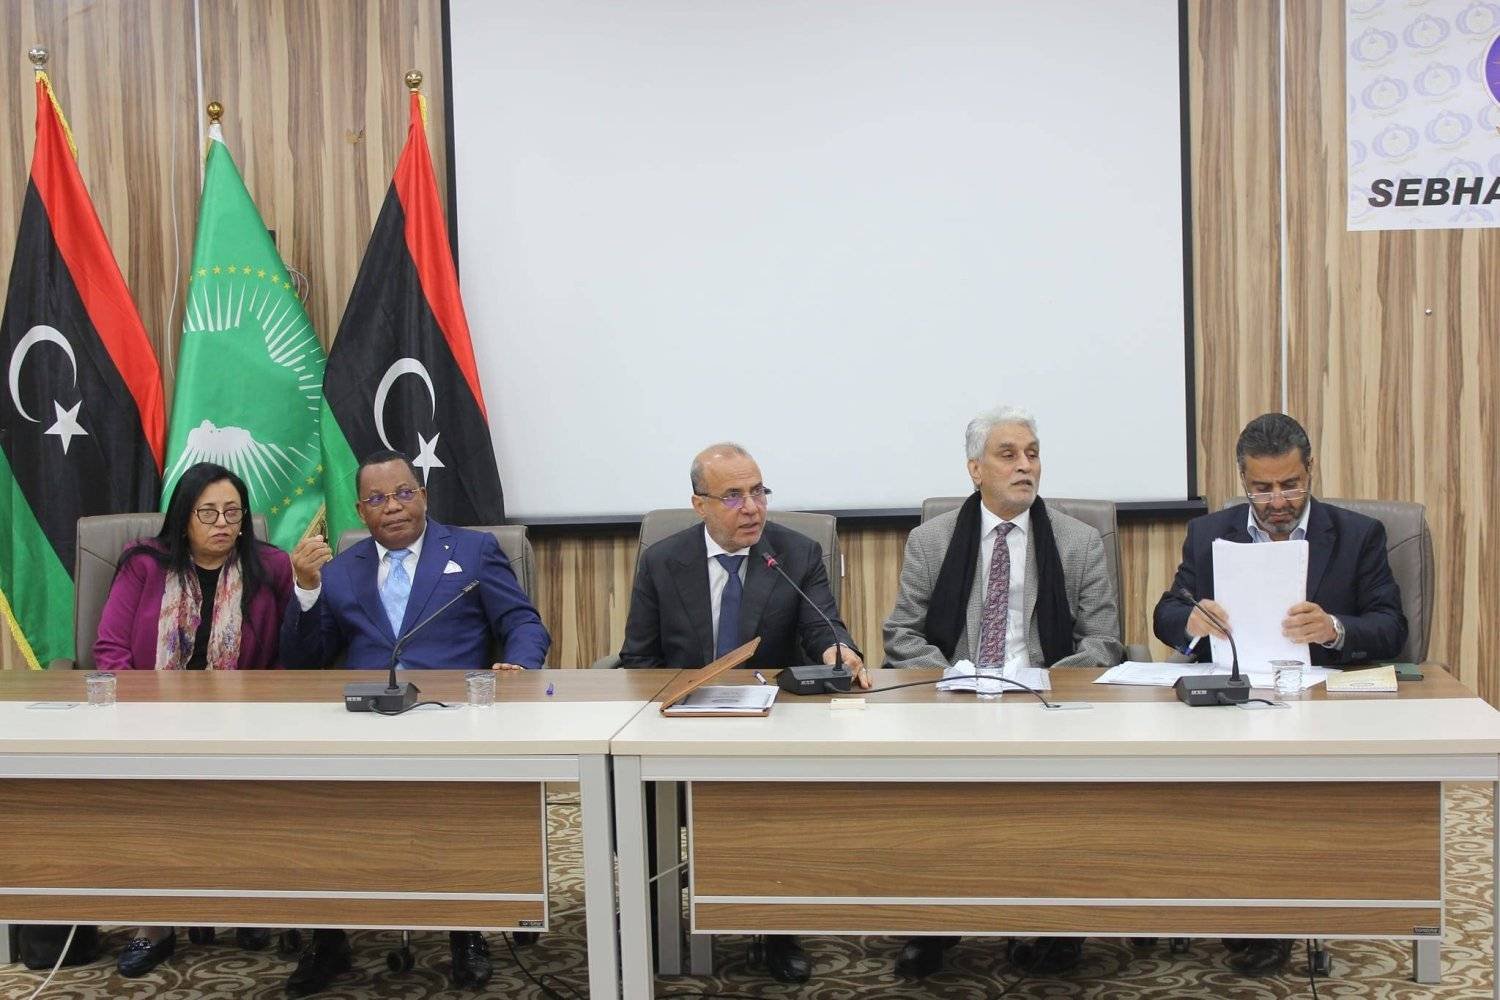 جانب من أعمال الاجتماع العادي الثالث للجنة التحضيرية للمصالحة الوطنية في ليبيا (المجلس الرئاسي)